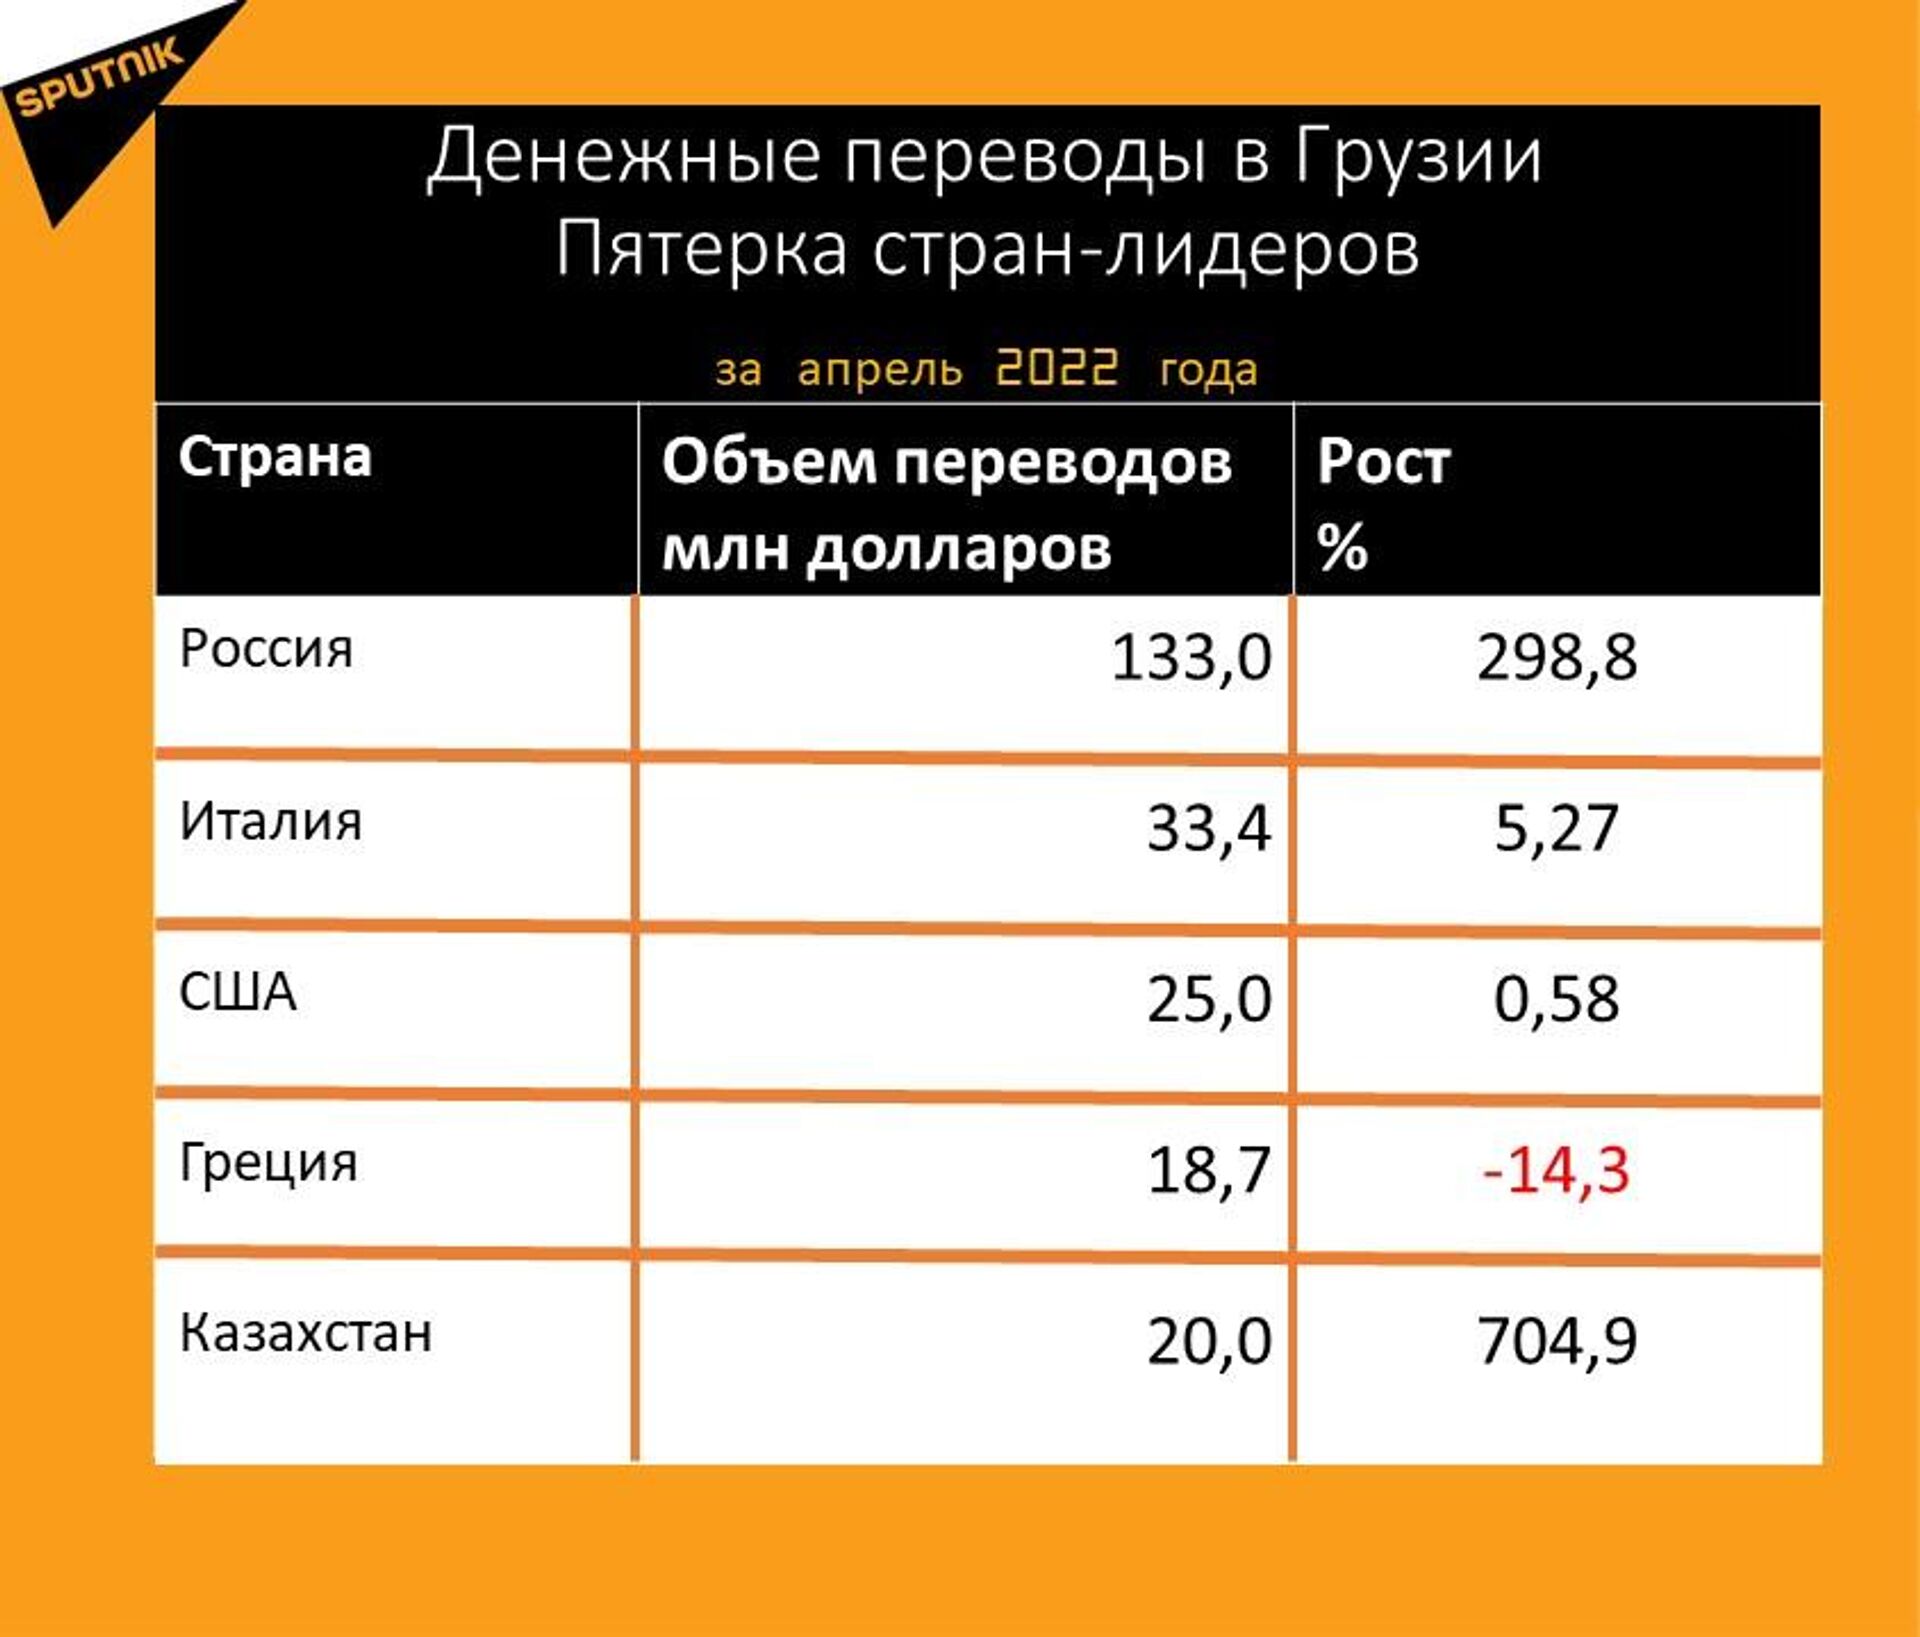 Статистика денежных переводов в Грузию за апрель 2022 года - Sputnik Грузия, 1920, 17.05.2022